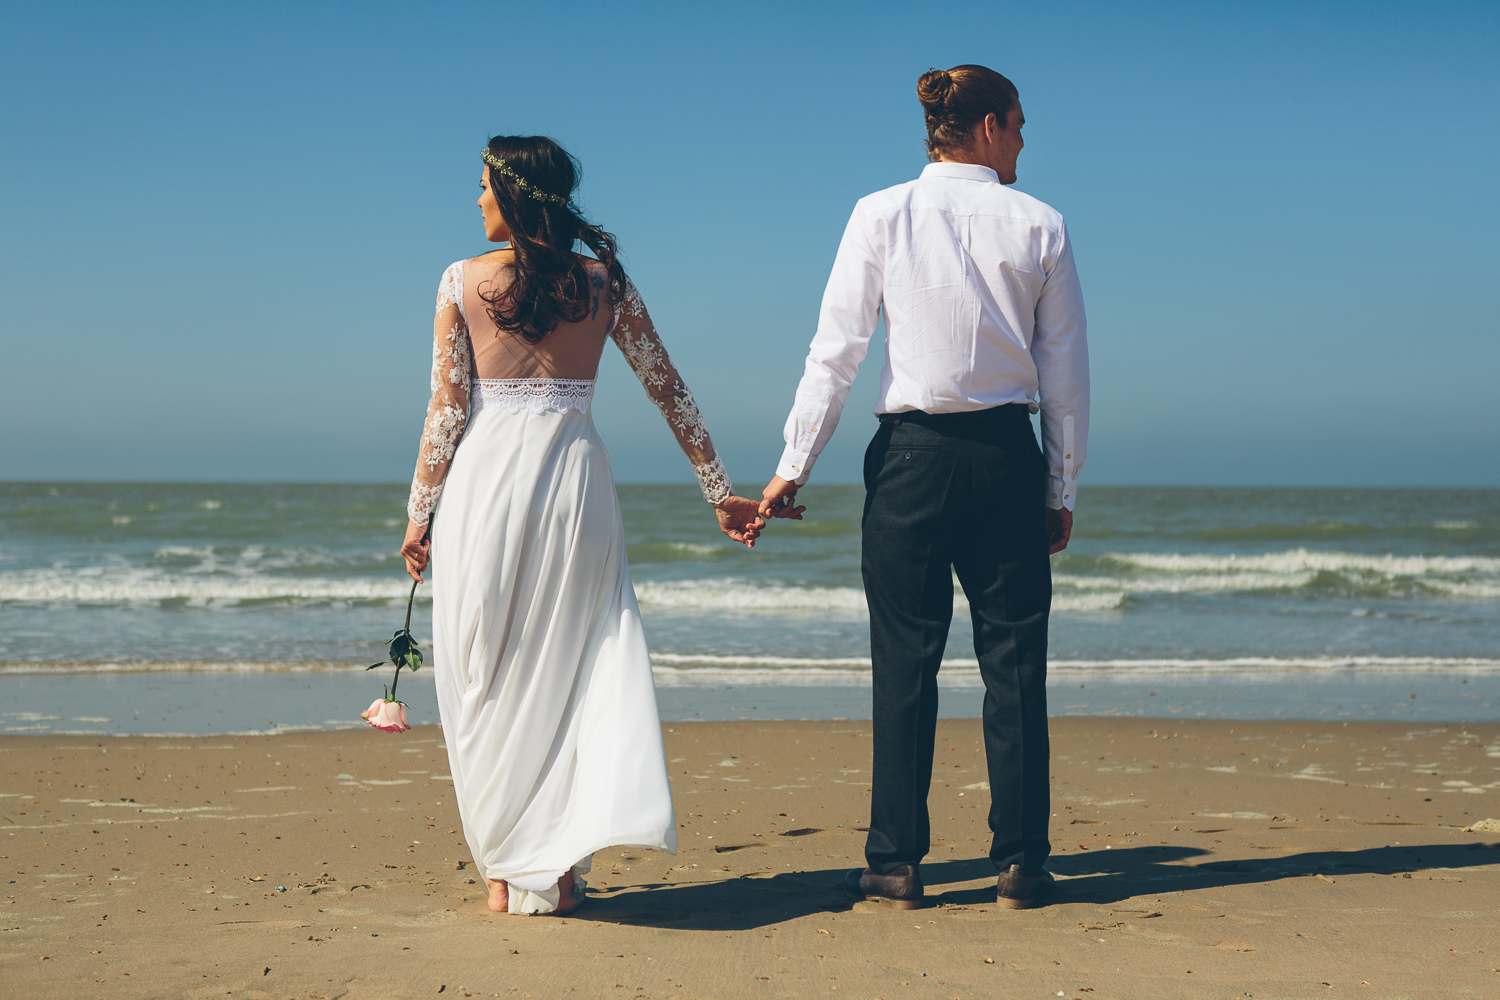 huwelijkfoto koppel strand zee shoot